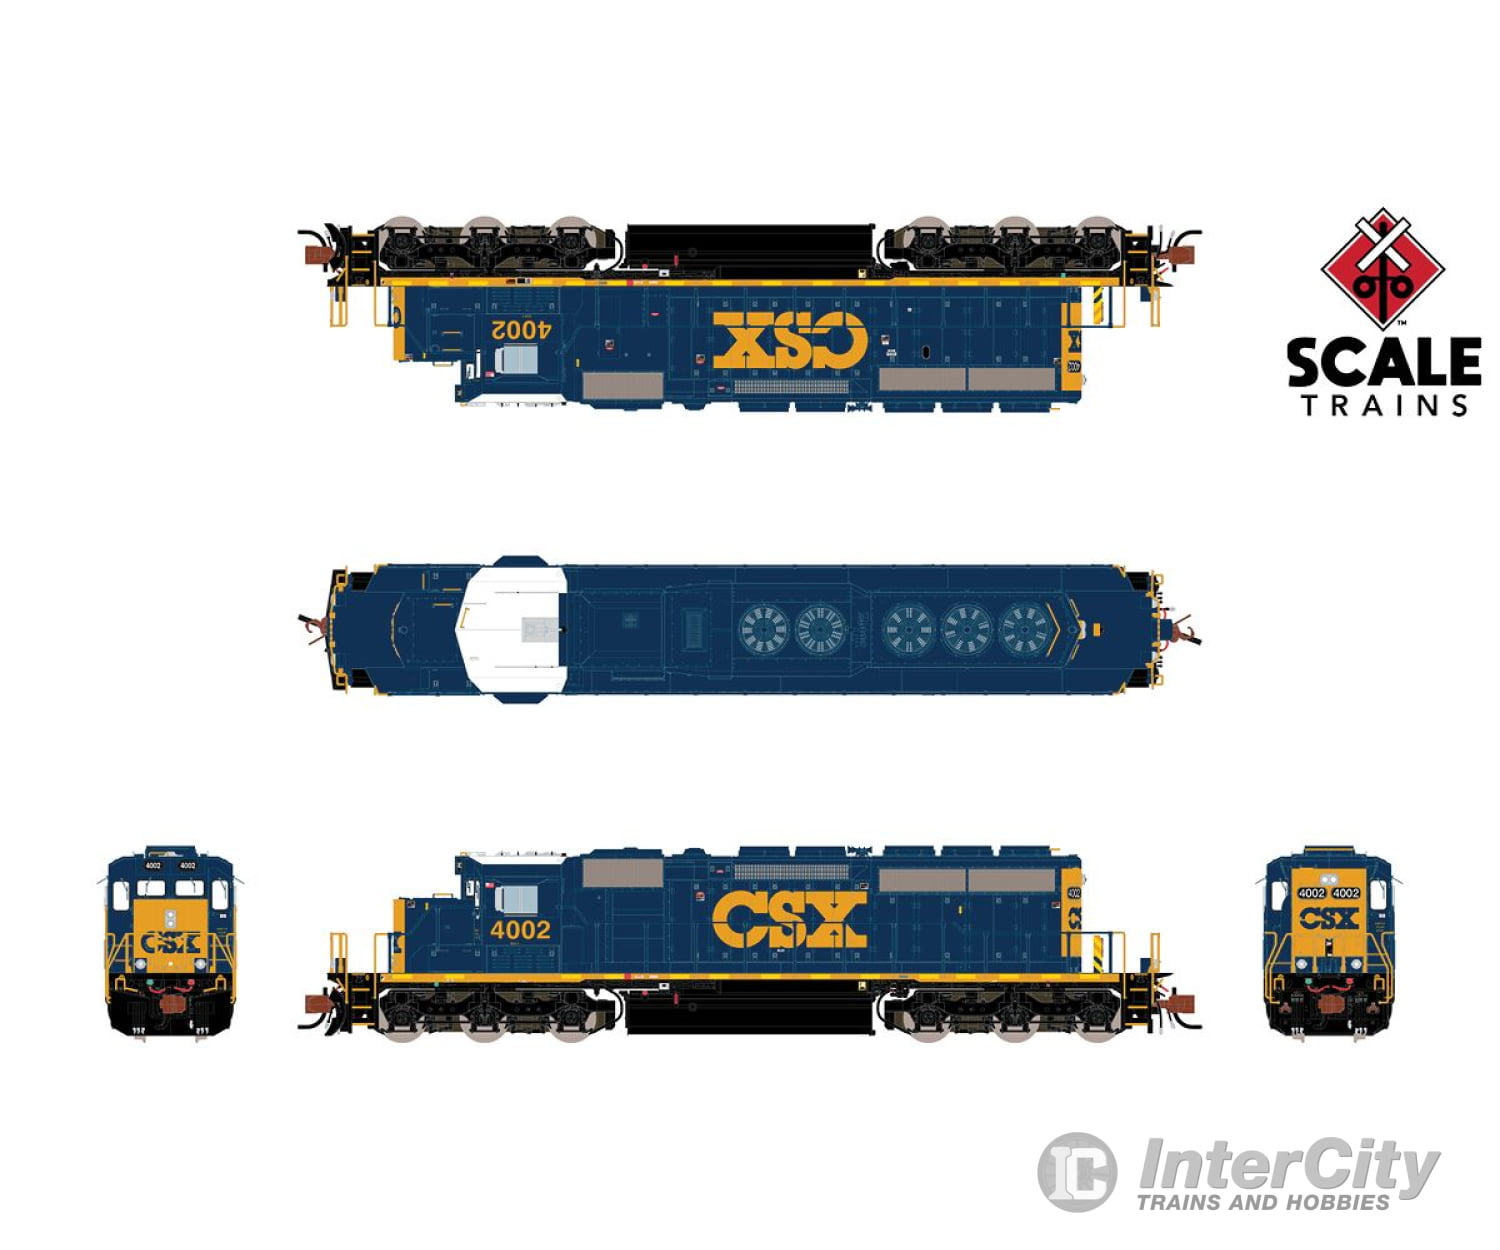 Scaletrains Sxt38619 Rivet Counter N Scale Emd Sd40-3 Csx Yn3 Scheme #4002 Dcc/Sound Locomotives